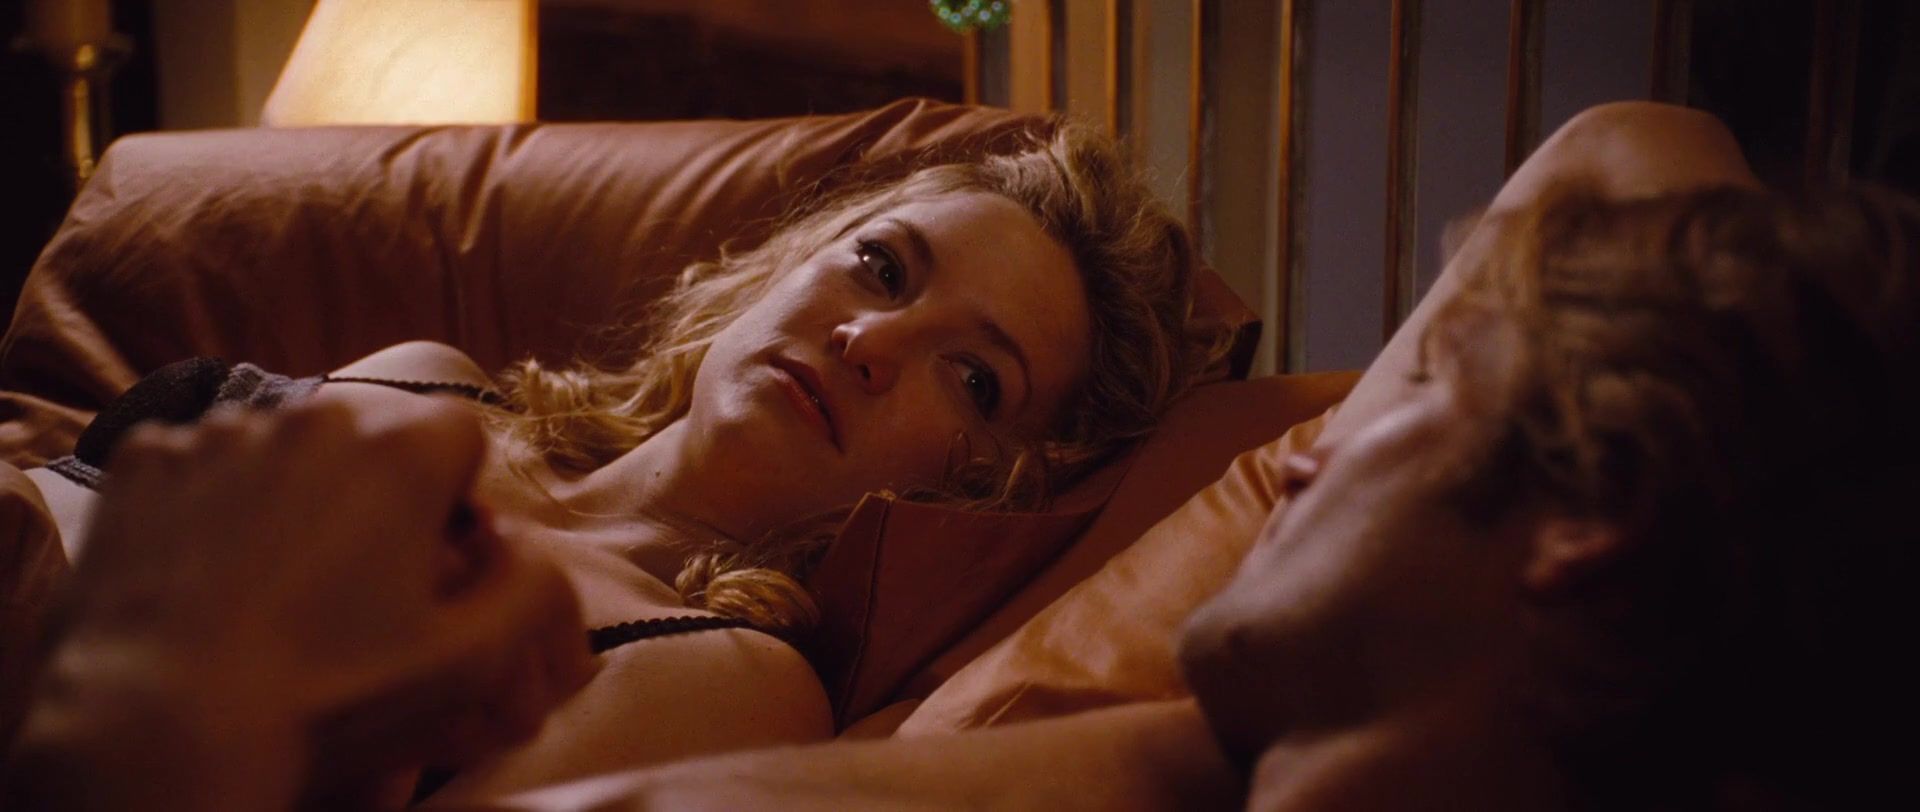 SeekingArrangemen... Sex video Kate Hudson - A Little Bit of Heaven (2012) Pornos